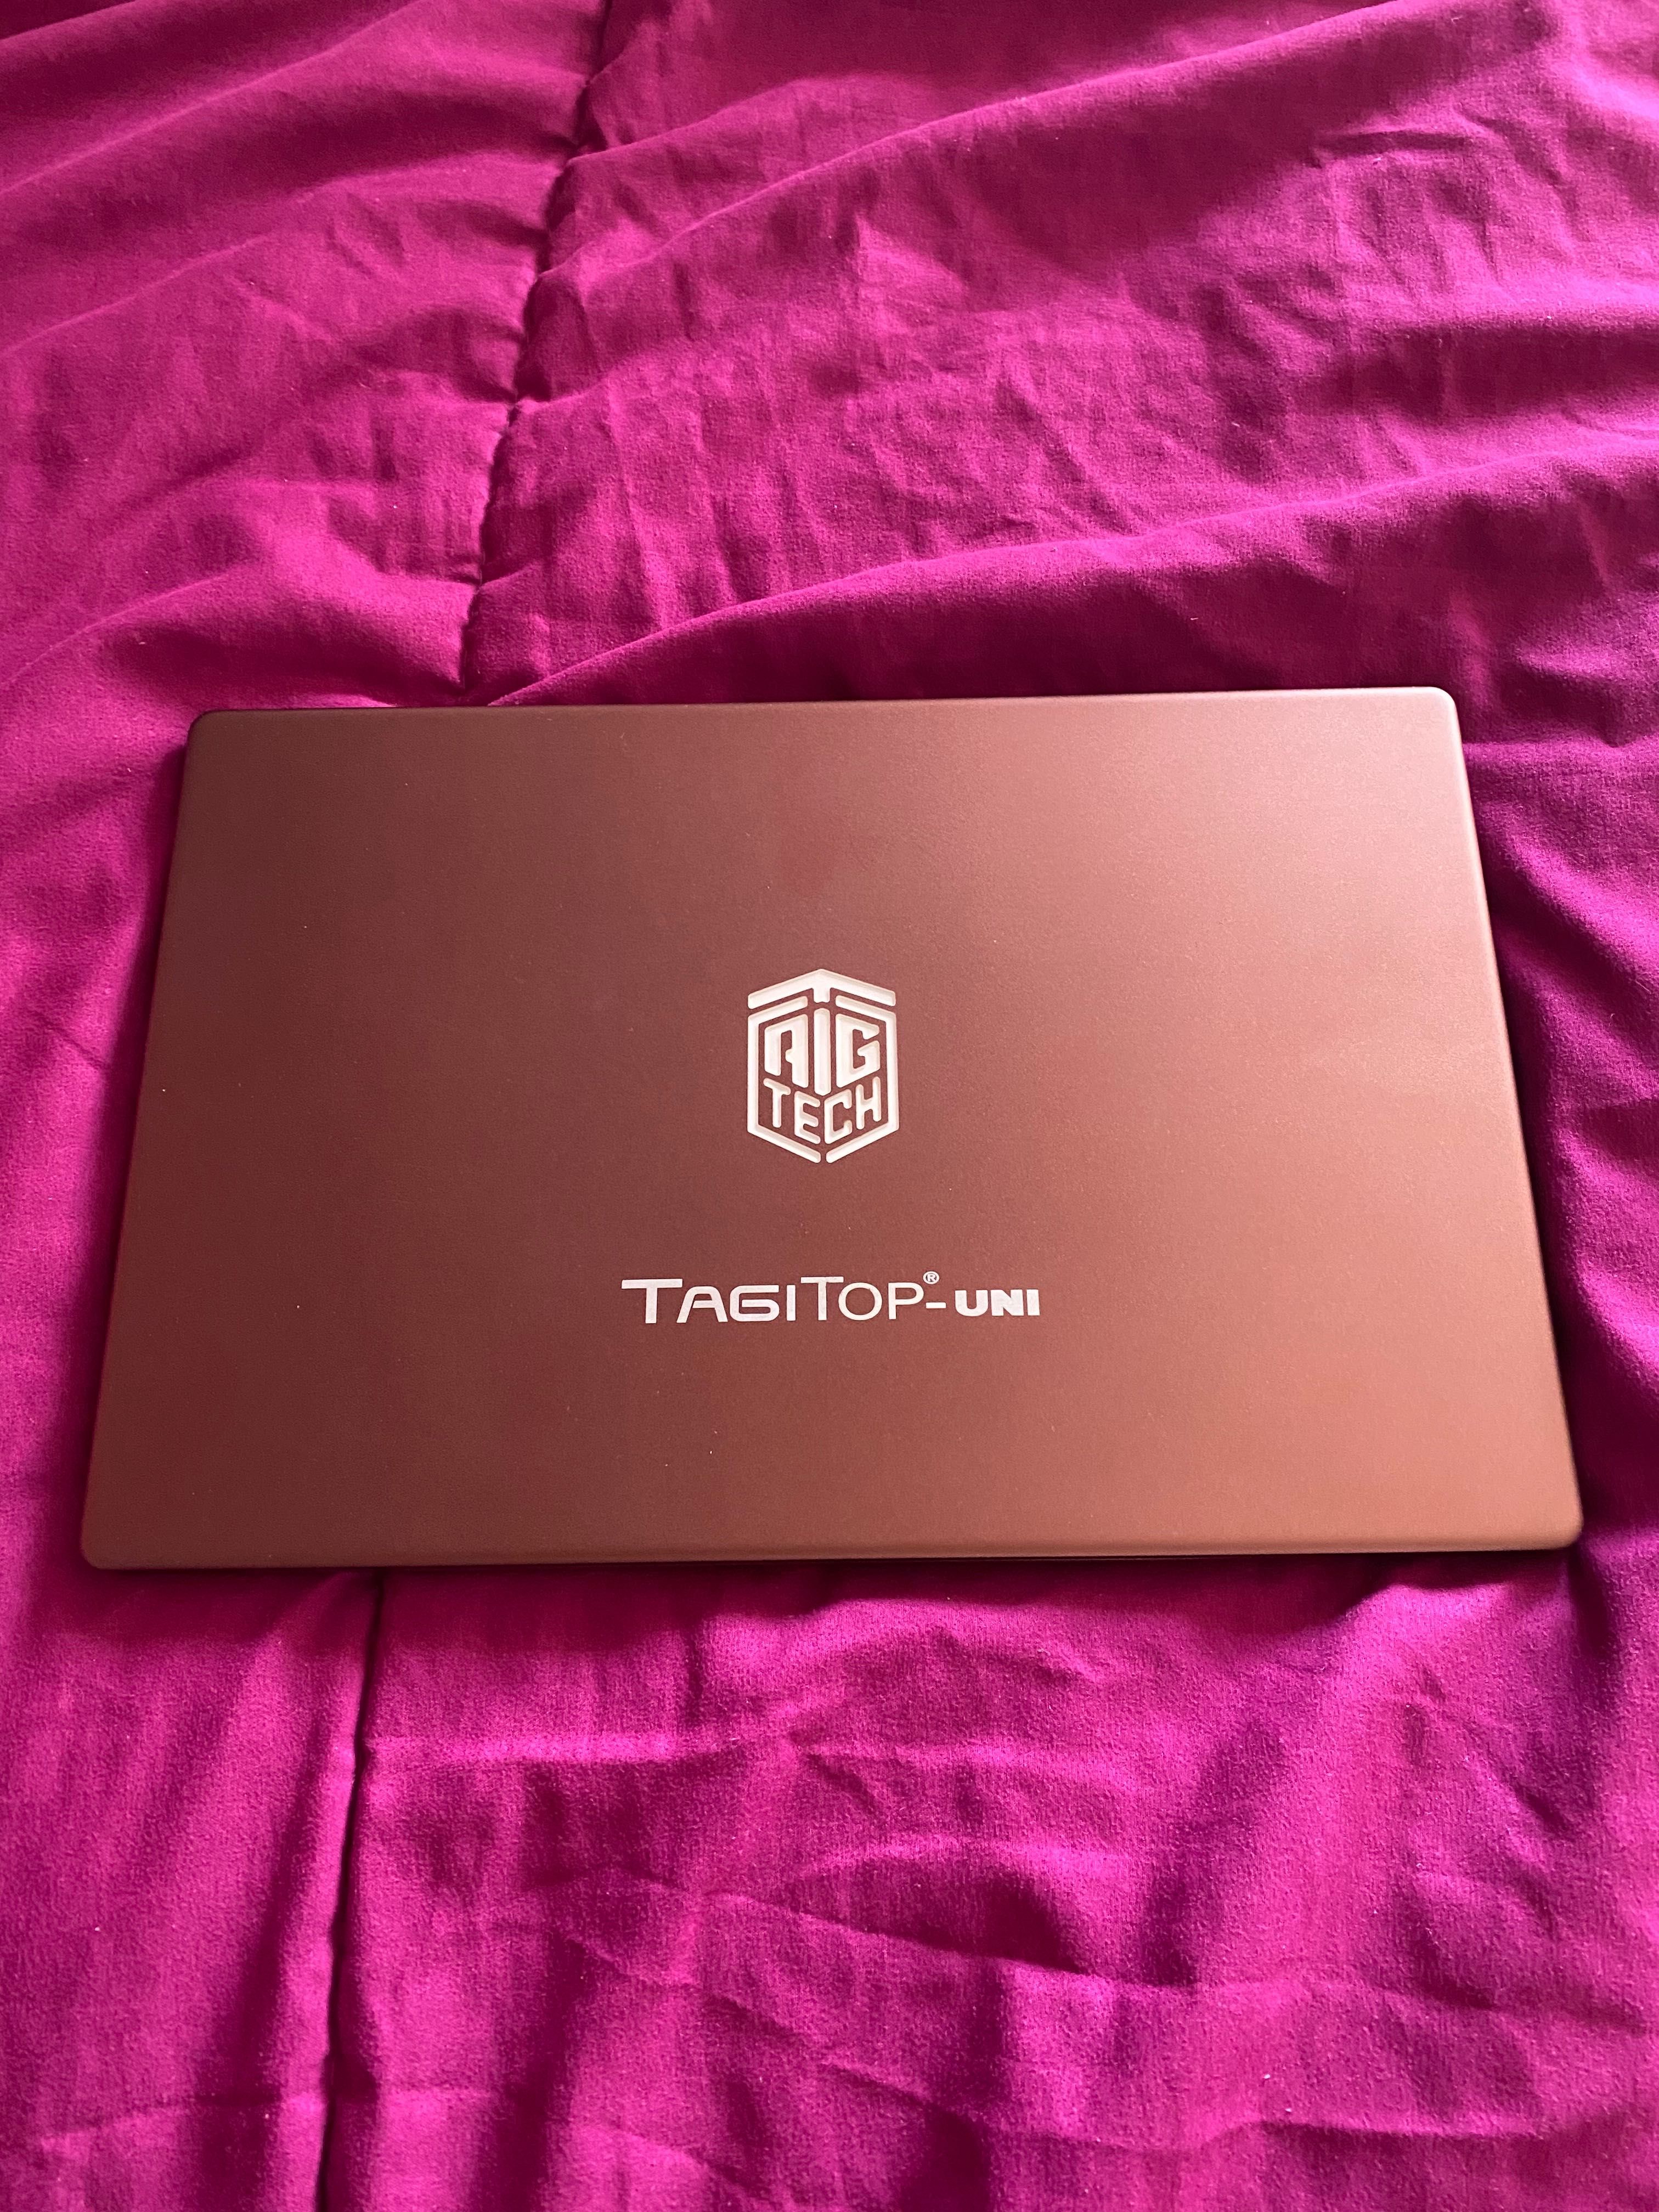 Laptop TAG I3 , w zestawie z odciskiem palca, ładowarką i torbą